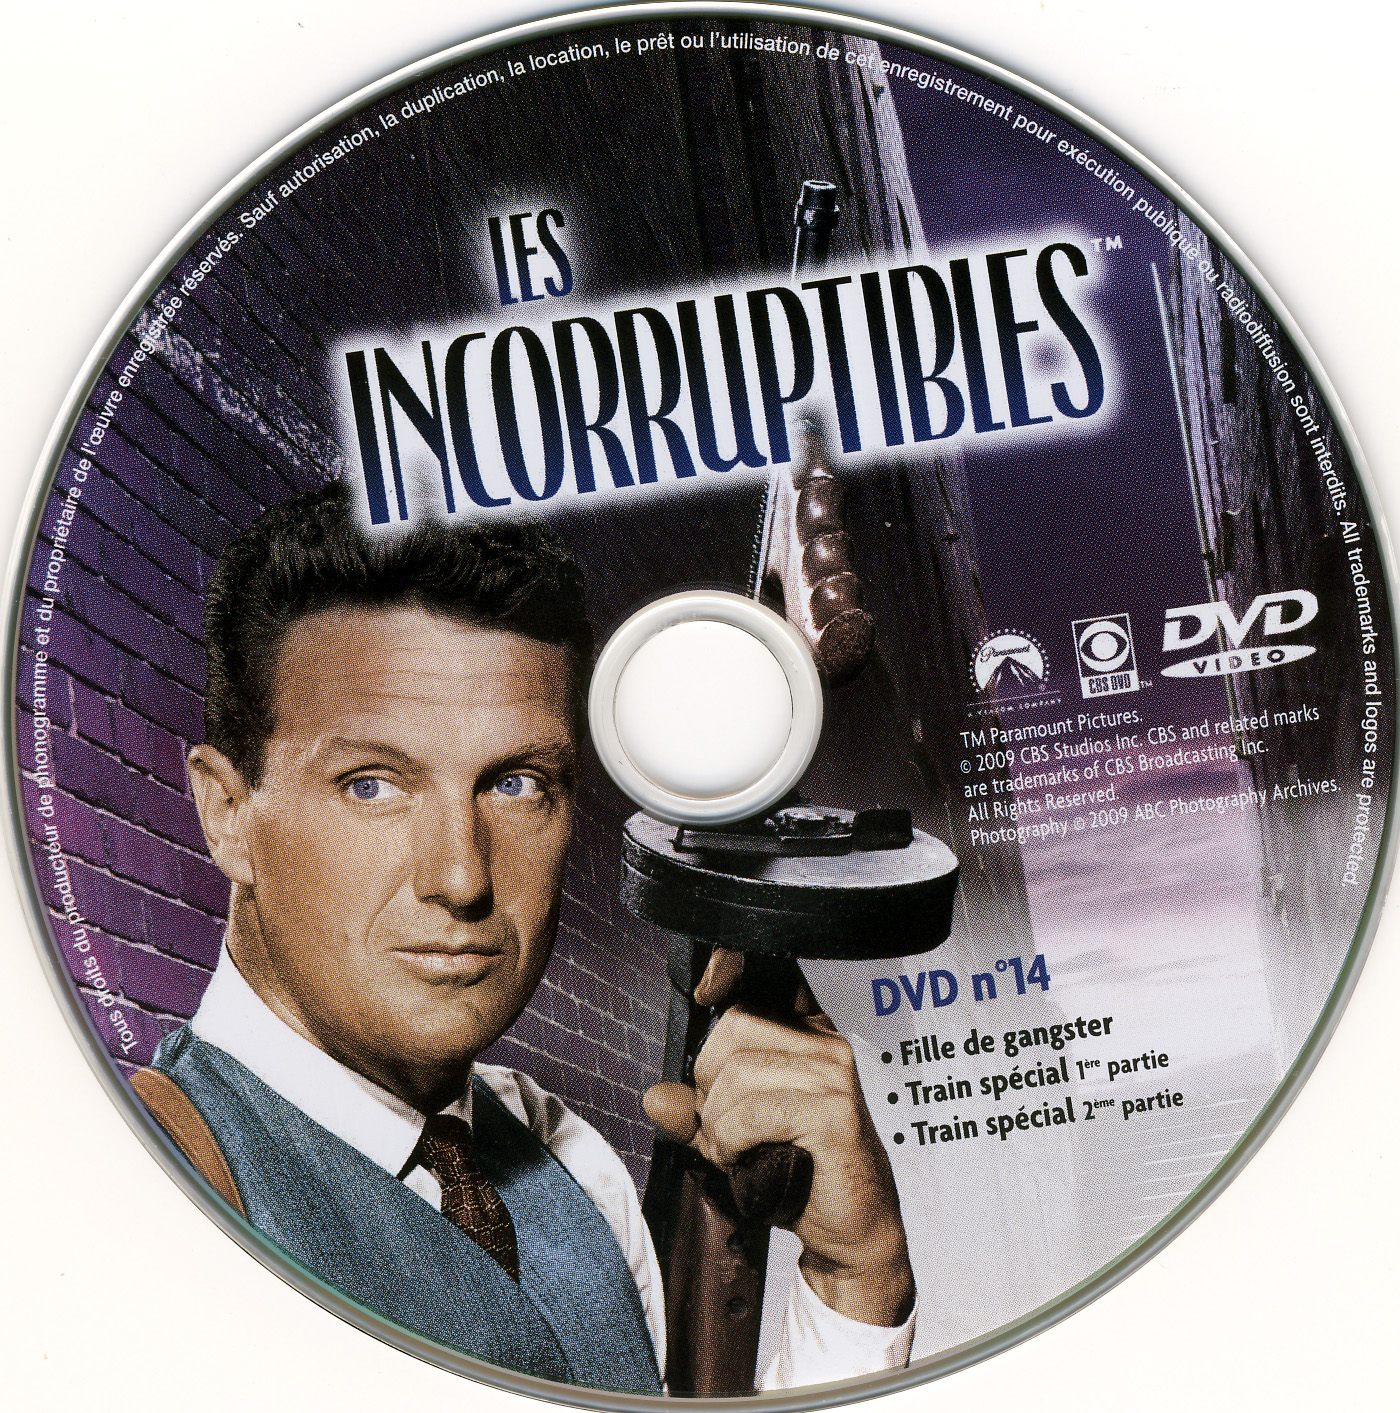 Les incorruptibles intgrale DVD 14